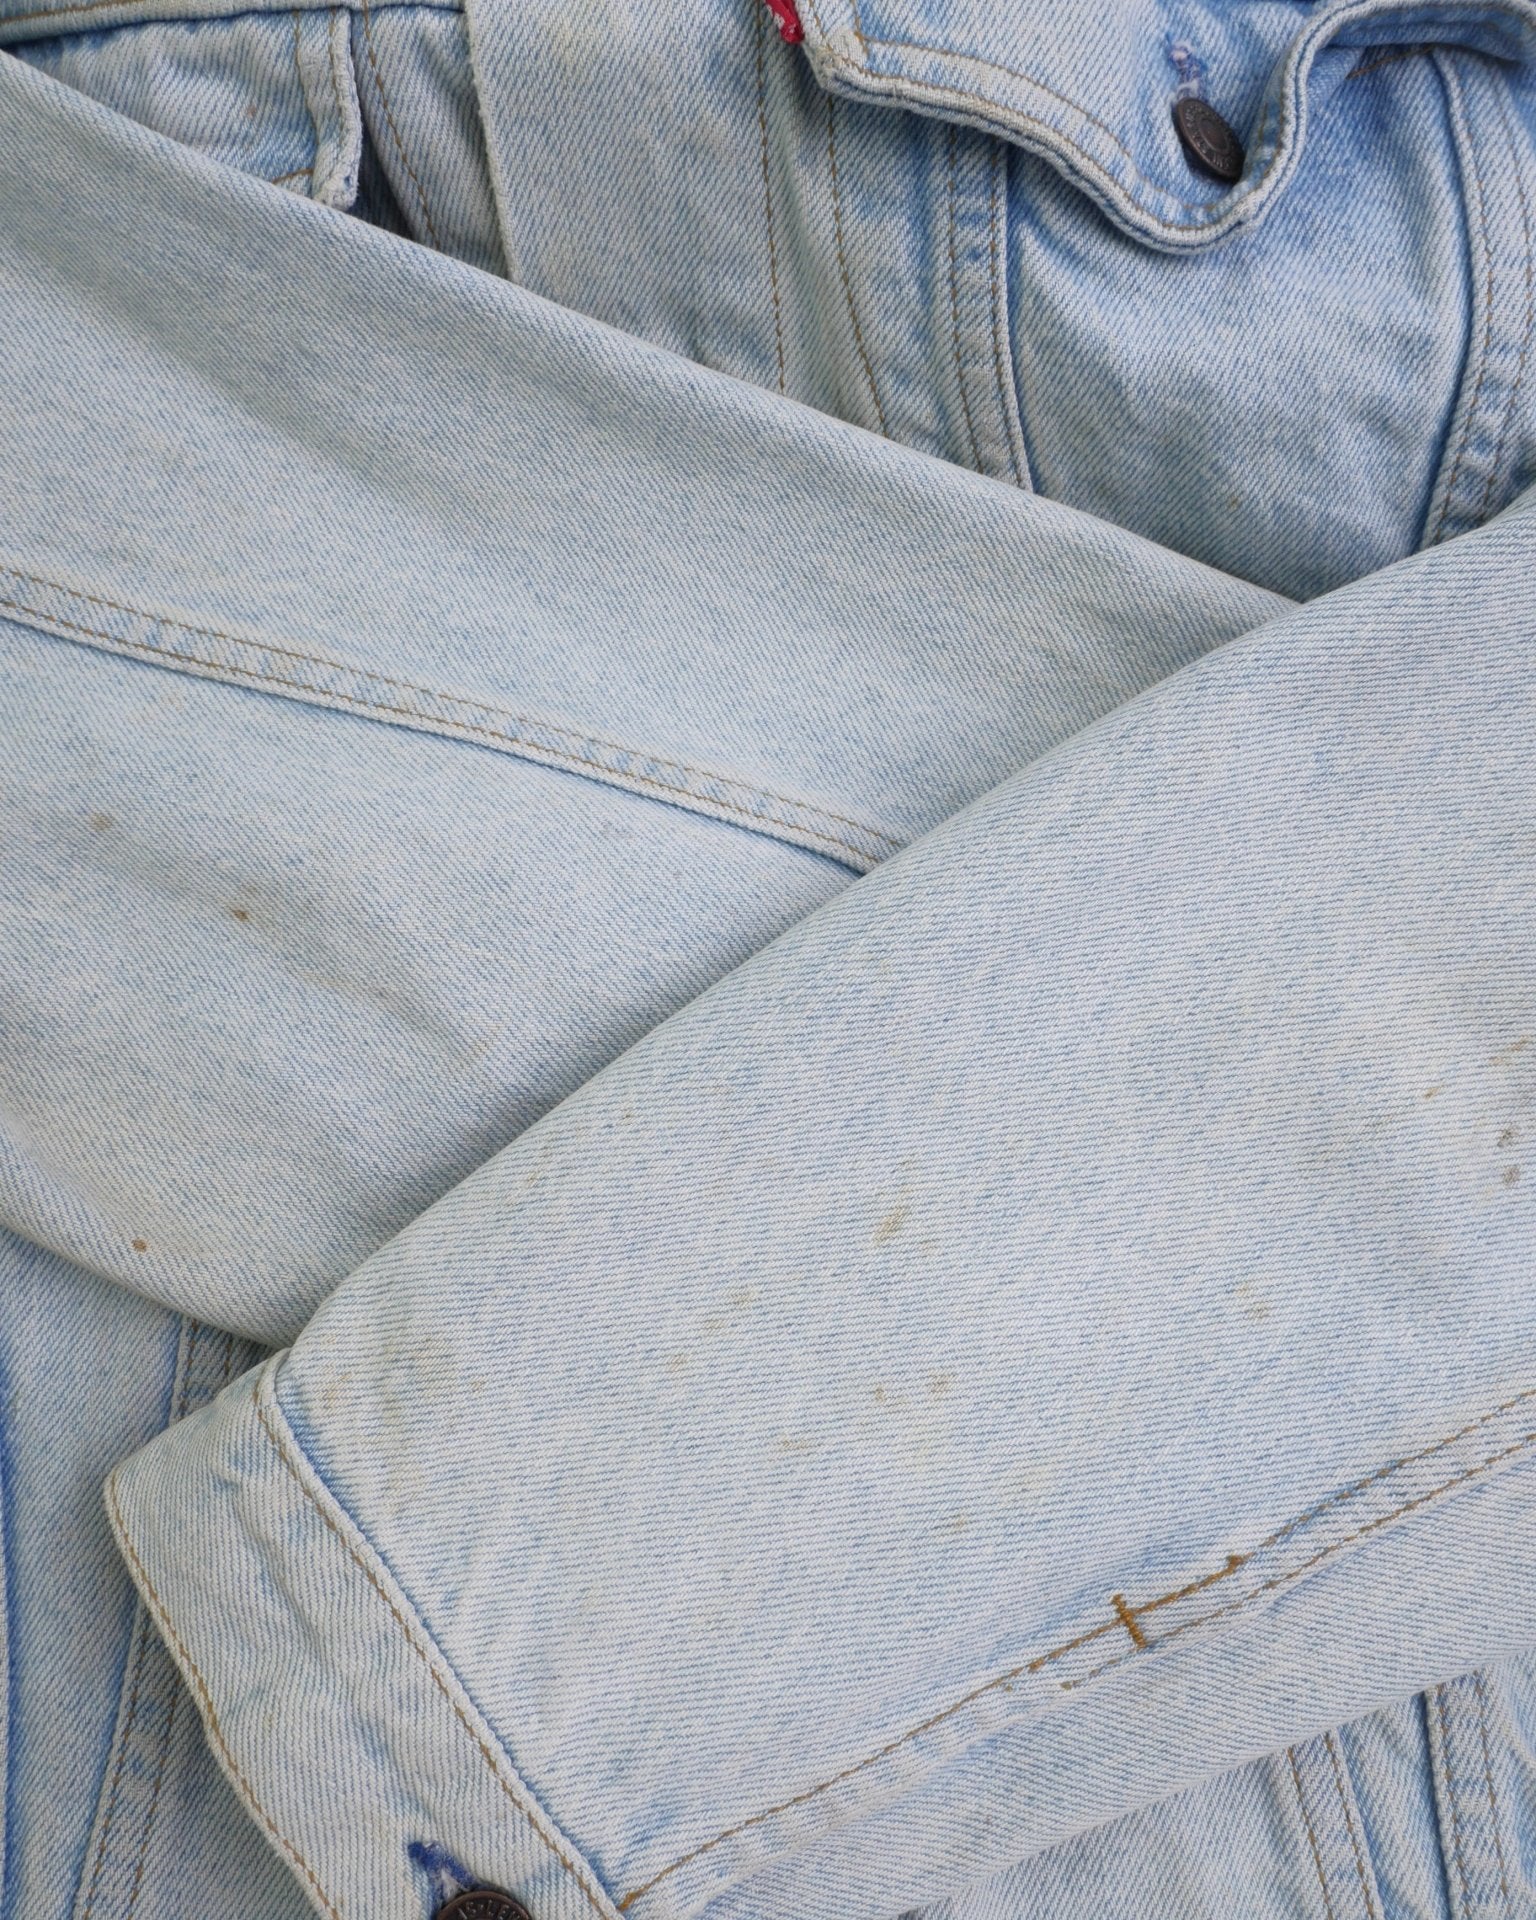 levis patched Logo blue Denim Vintage Jacke - Peeces